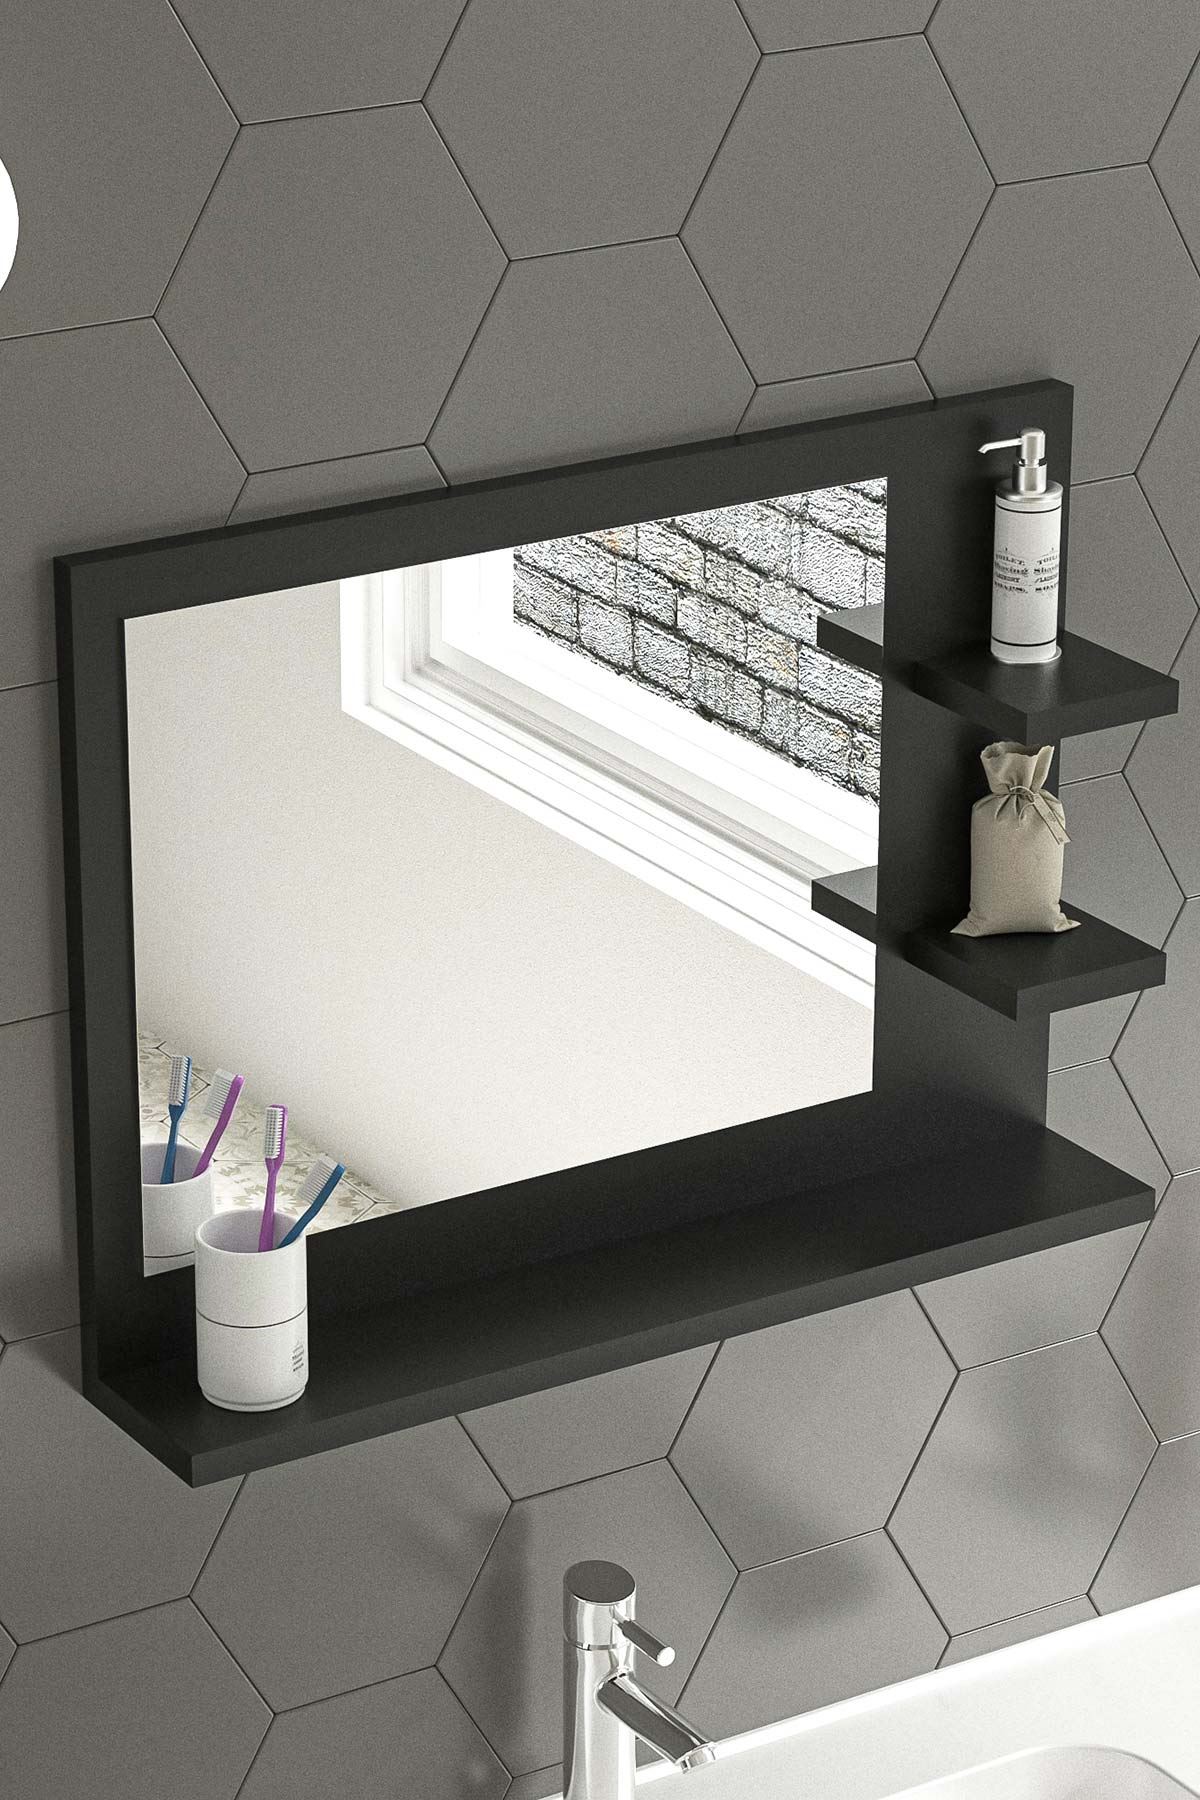 Bofigo 60x45 Cm Genova Banyo Rafı Lavabo Rafı Aynalı Raf Banyo Aynası Antrasit